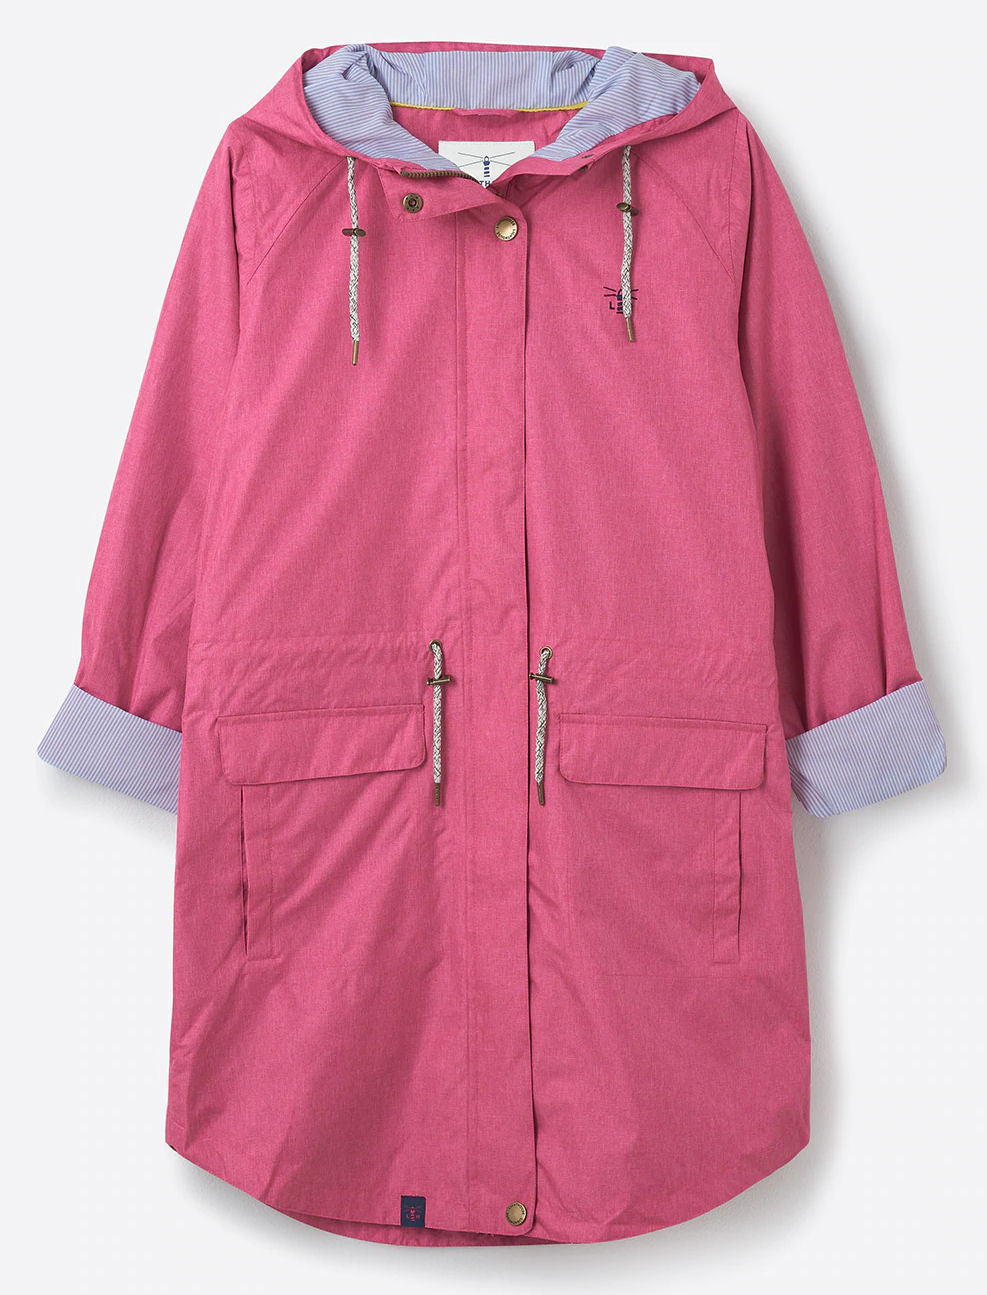 Women's Alice style waterproof rain jacket from Lighthouse in Pink.